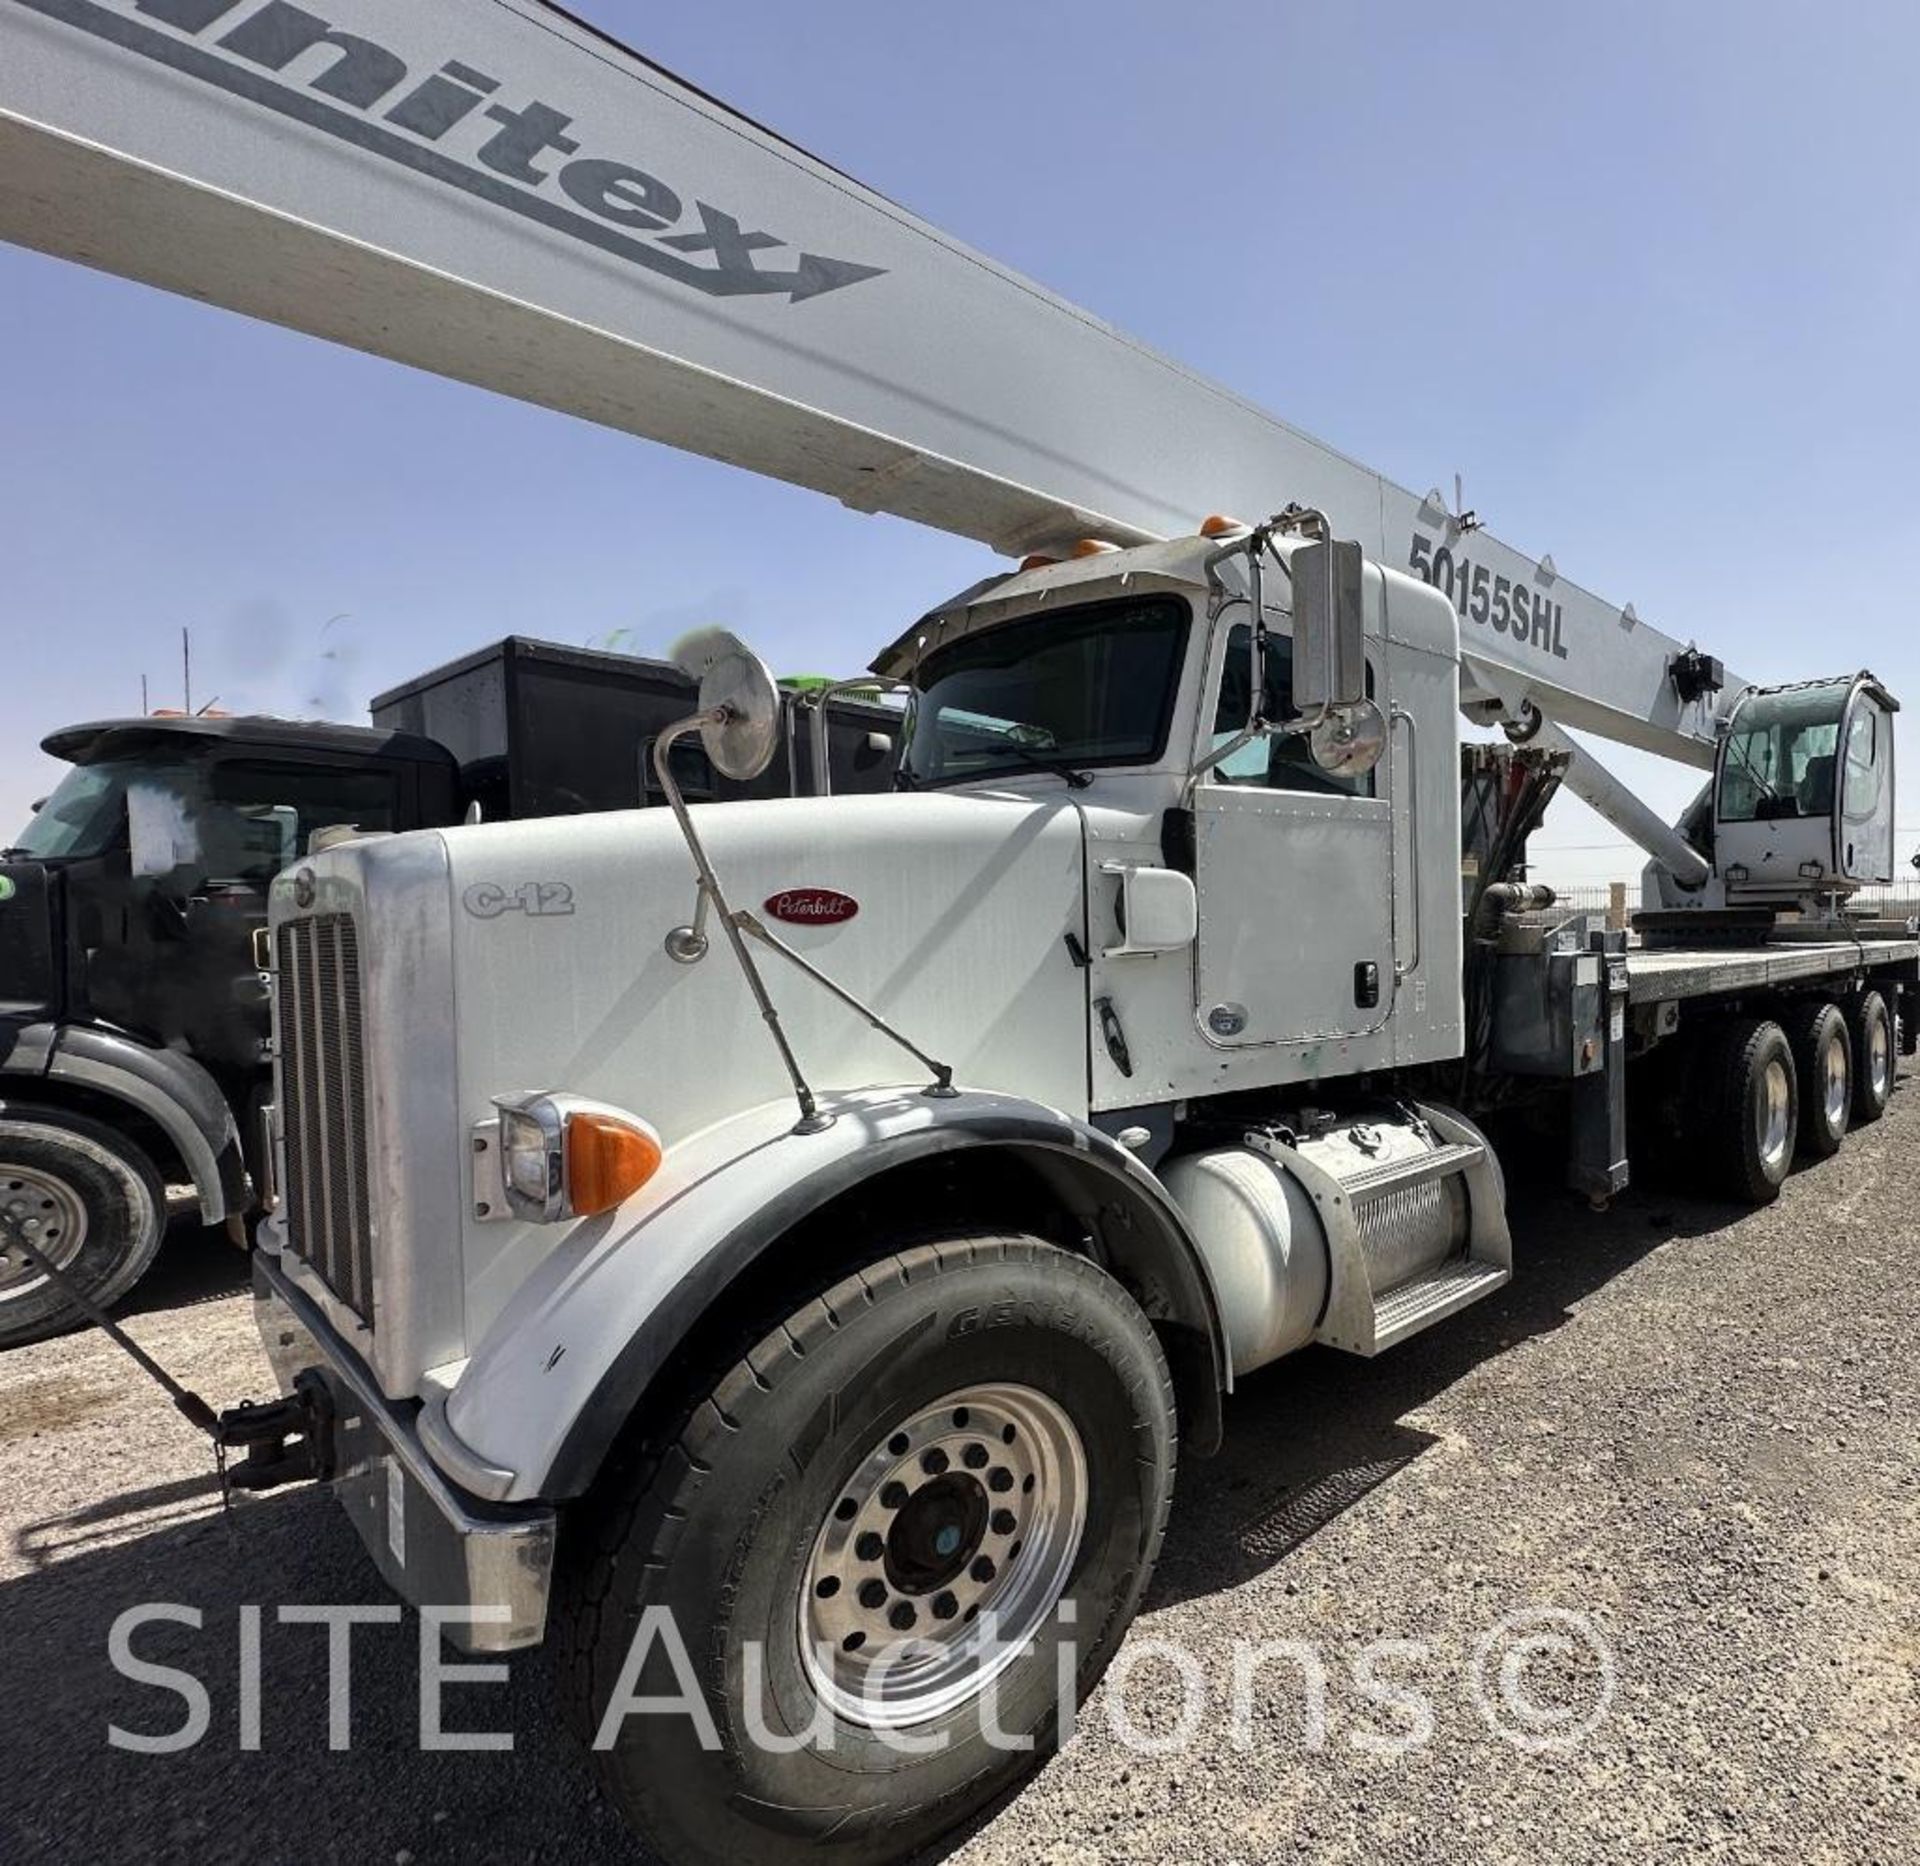 2014 Peterbilt 365 Quad/A Crane Truck w/ Manitex 50155SHL Crane - Image 5 of 33